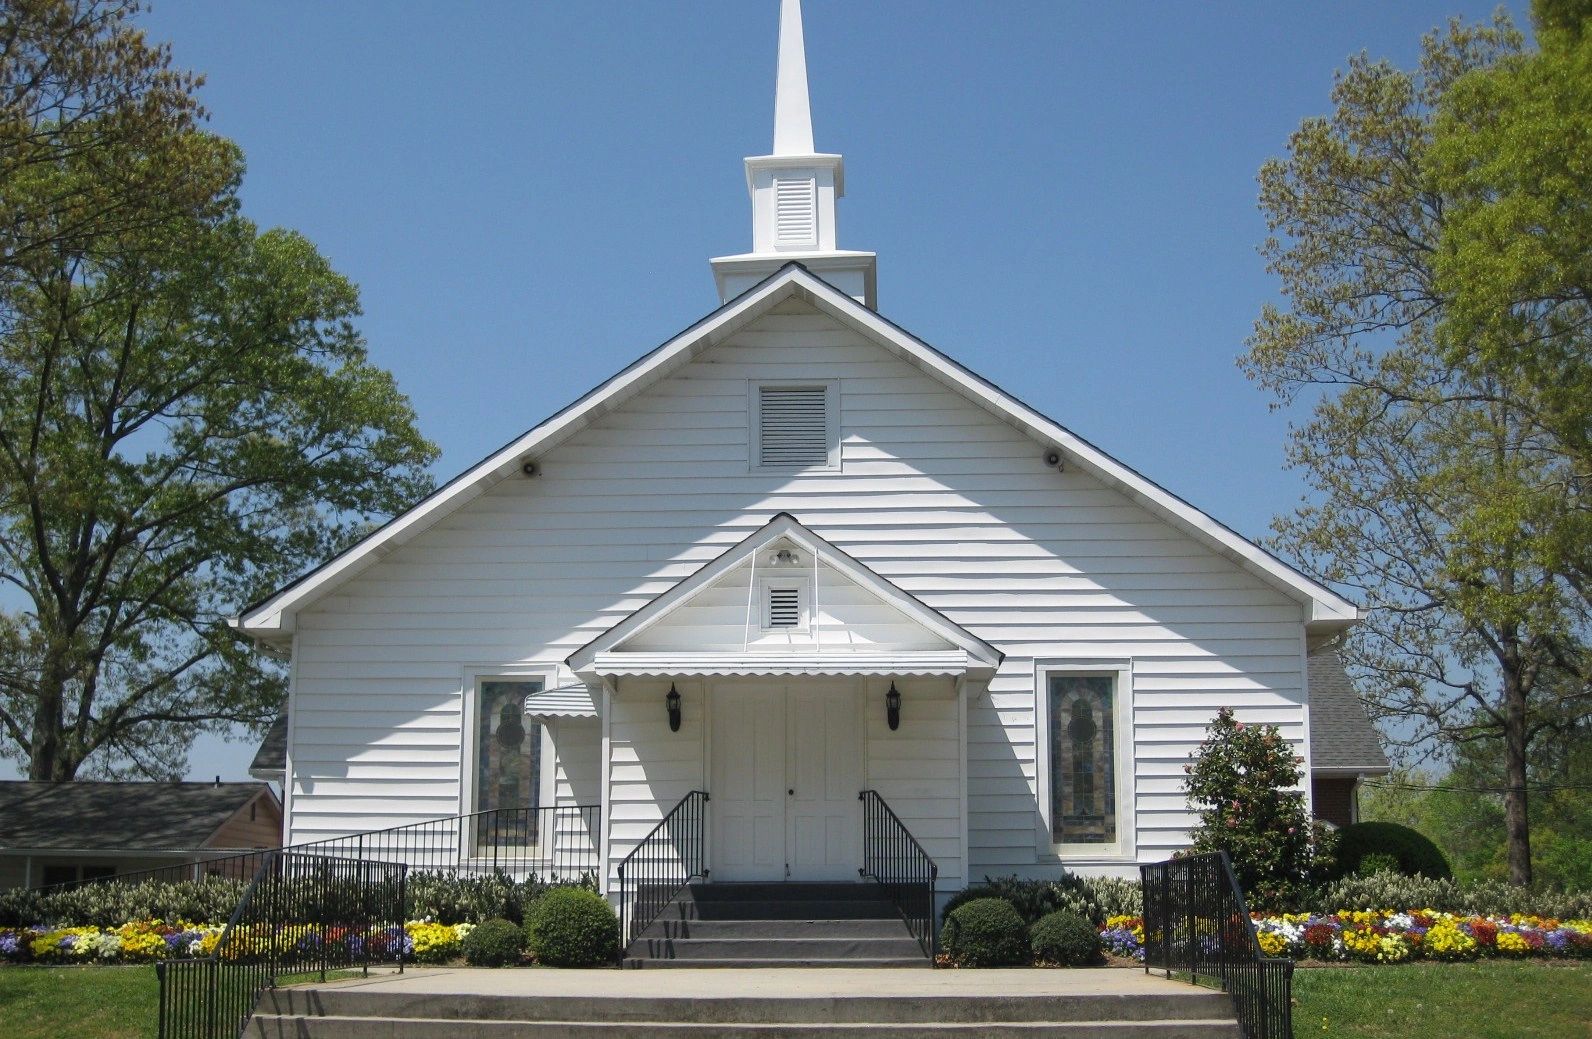 Sardis Baptist Church